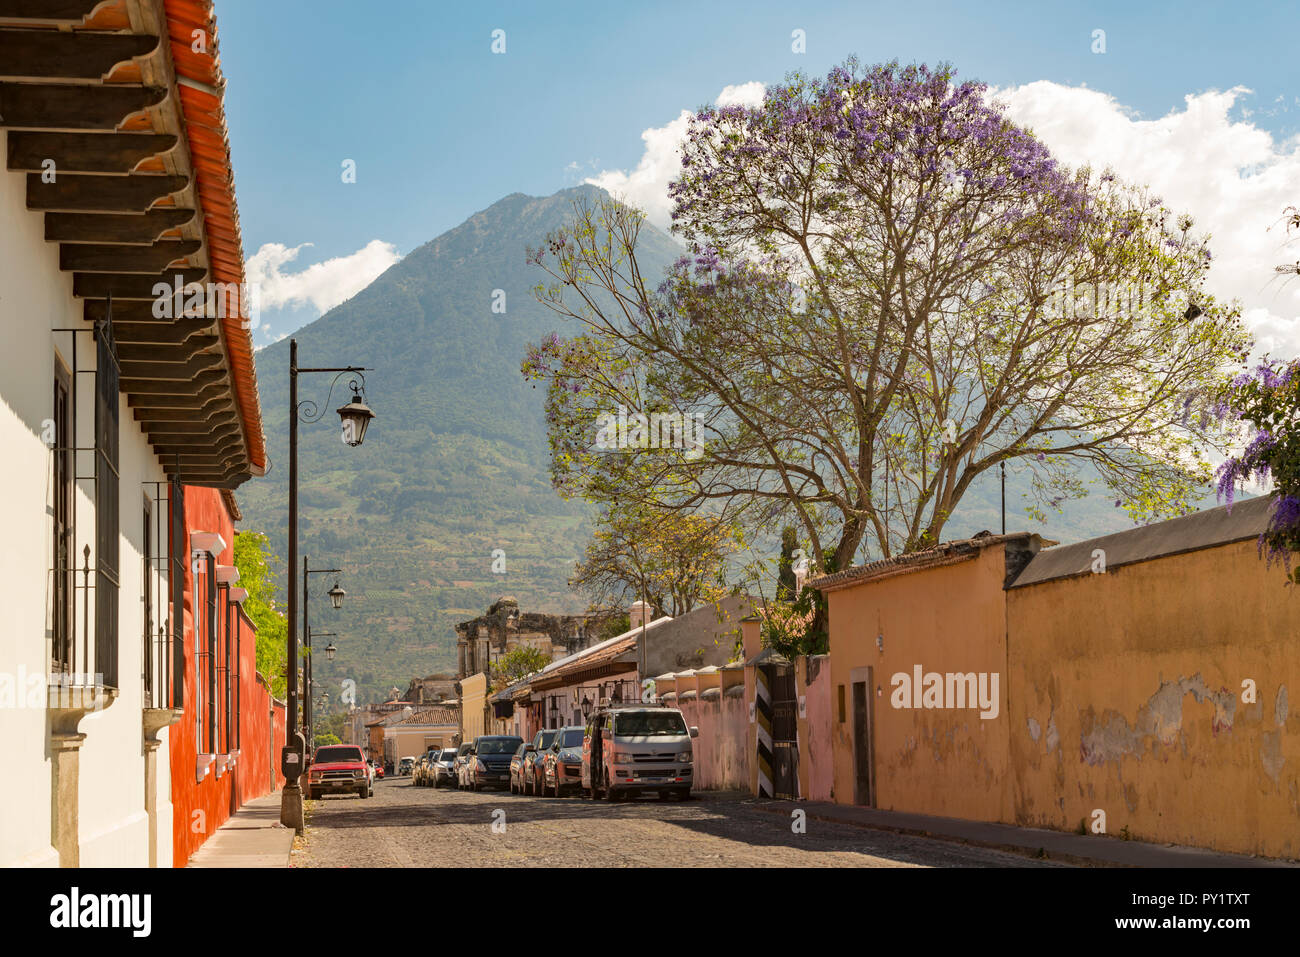 ANTIGUA, GUATEMALA - Februar 24, 2018: Straßenszenen in der beliebten Touristenstadt Antigua, Guatemala mit Volcan de Agua im Hintergrund. Stockfoto